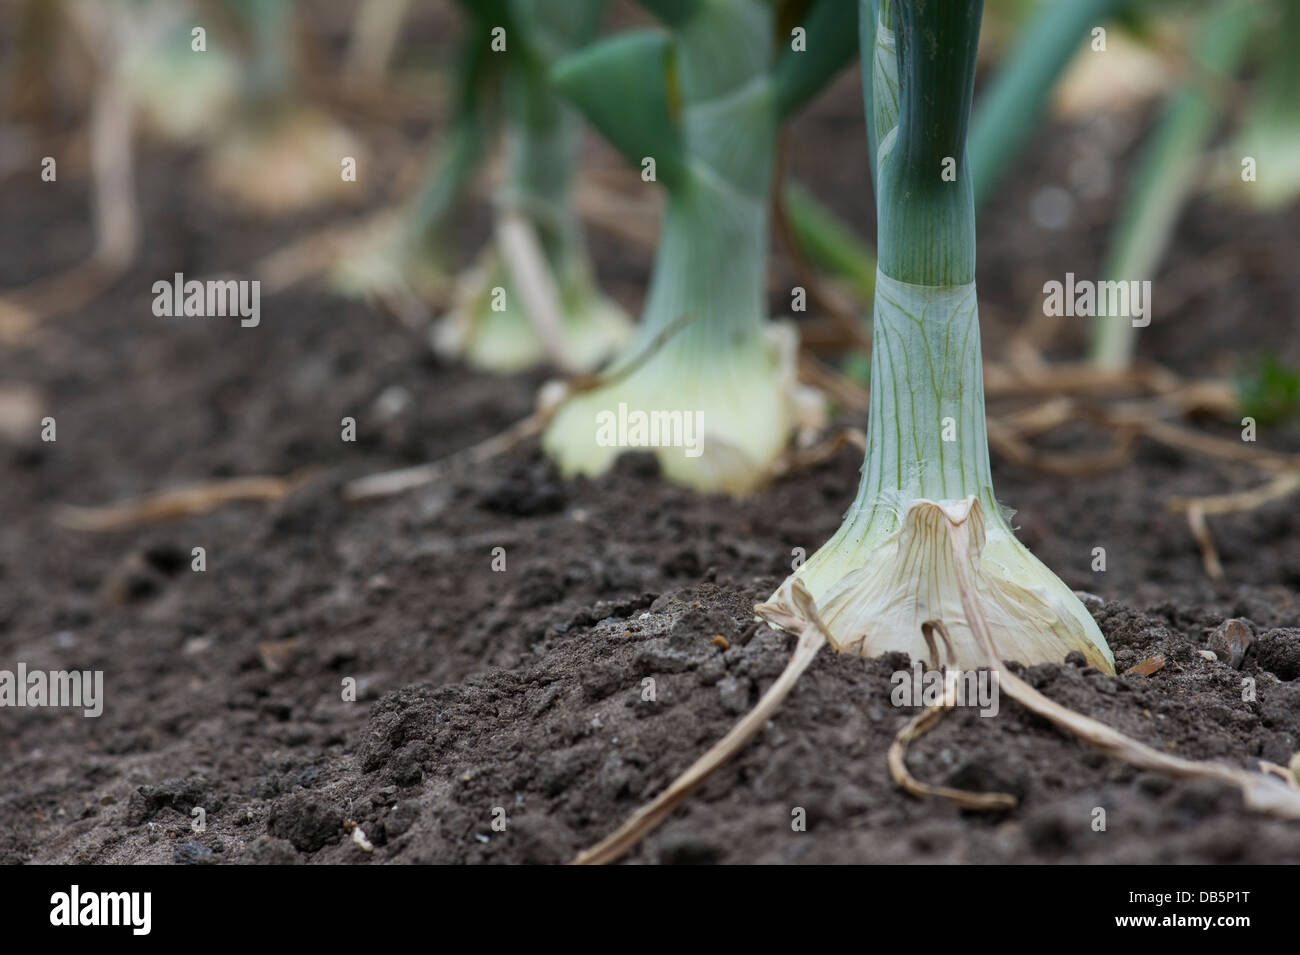 Allium cepa. Hytech cebollas en un huerto. UK Foto de stock